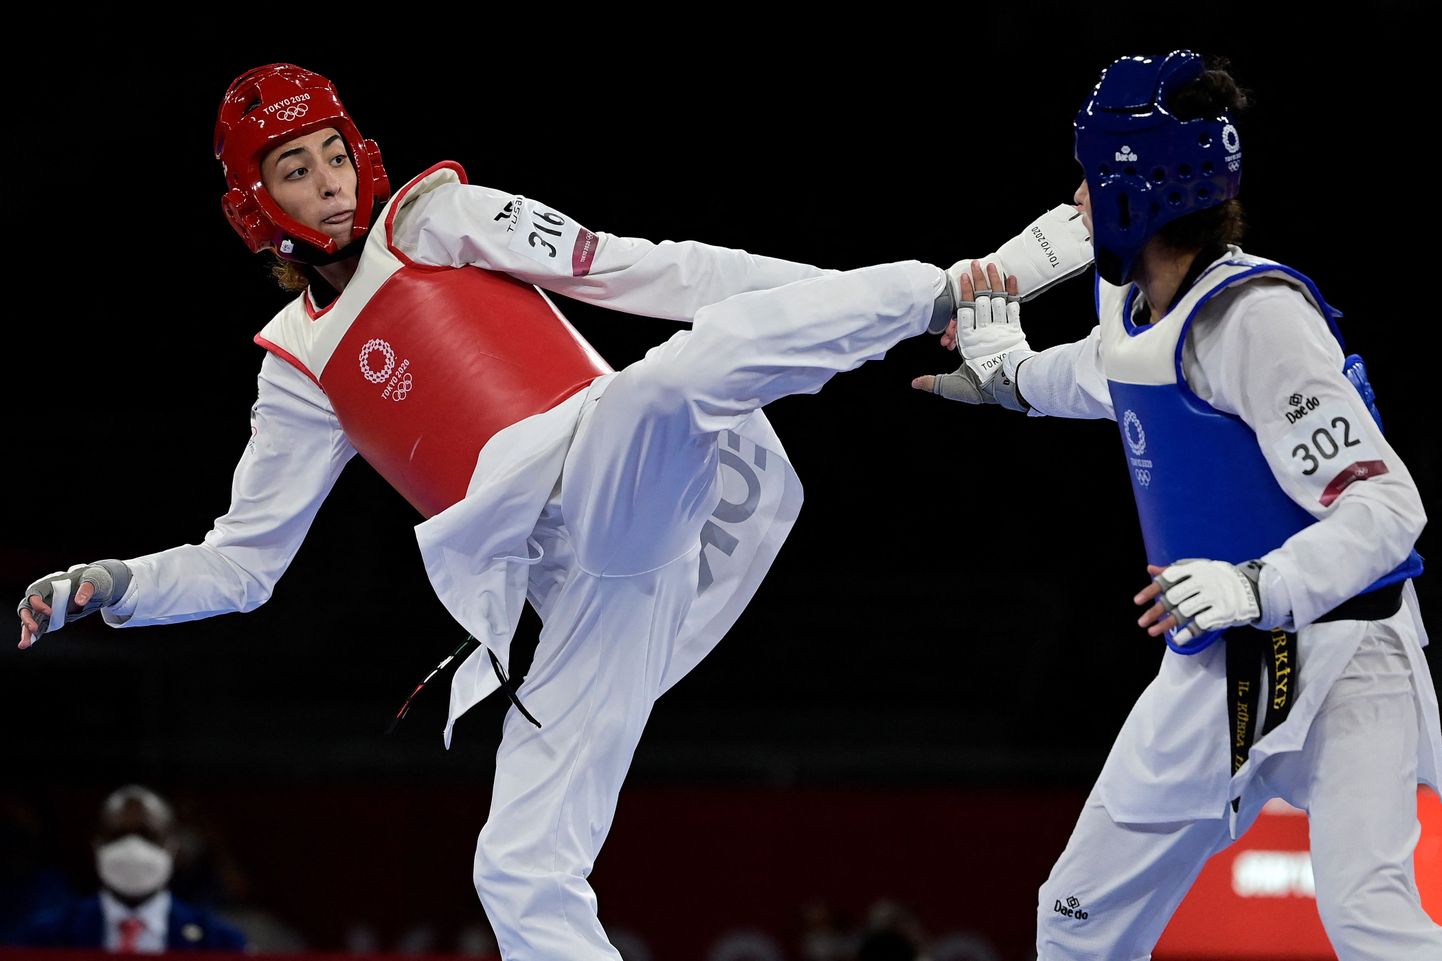 Türklanna Hatice Kübra İlgün (sinises) alistas Tokyo olümpiamängudel taekwondo's naiste 57 kilogrammi kategoorias pronksmedalivõistlusel Kimia Alisadehi (punases)